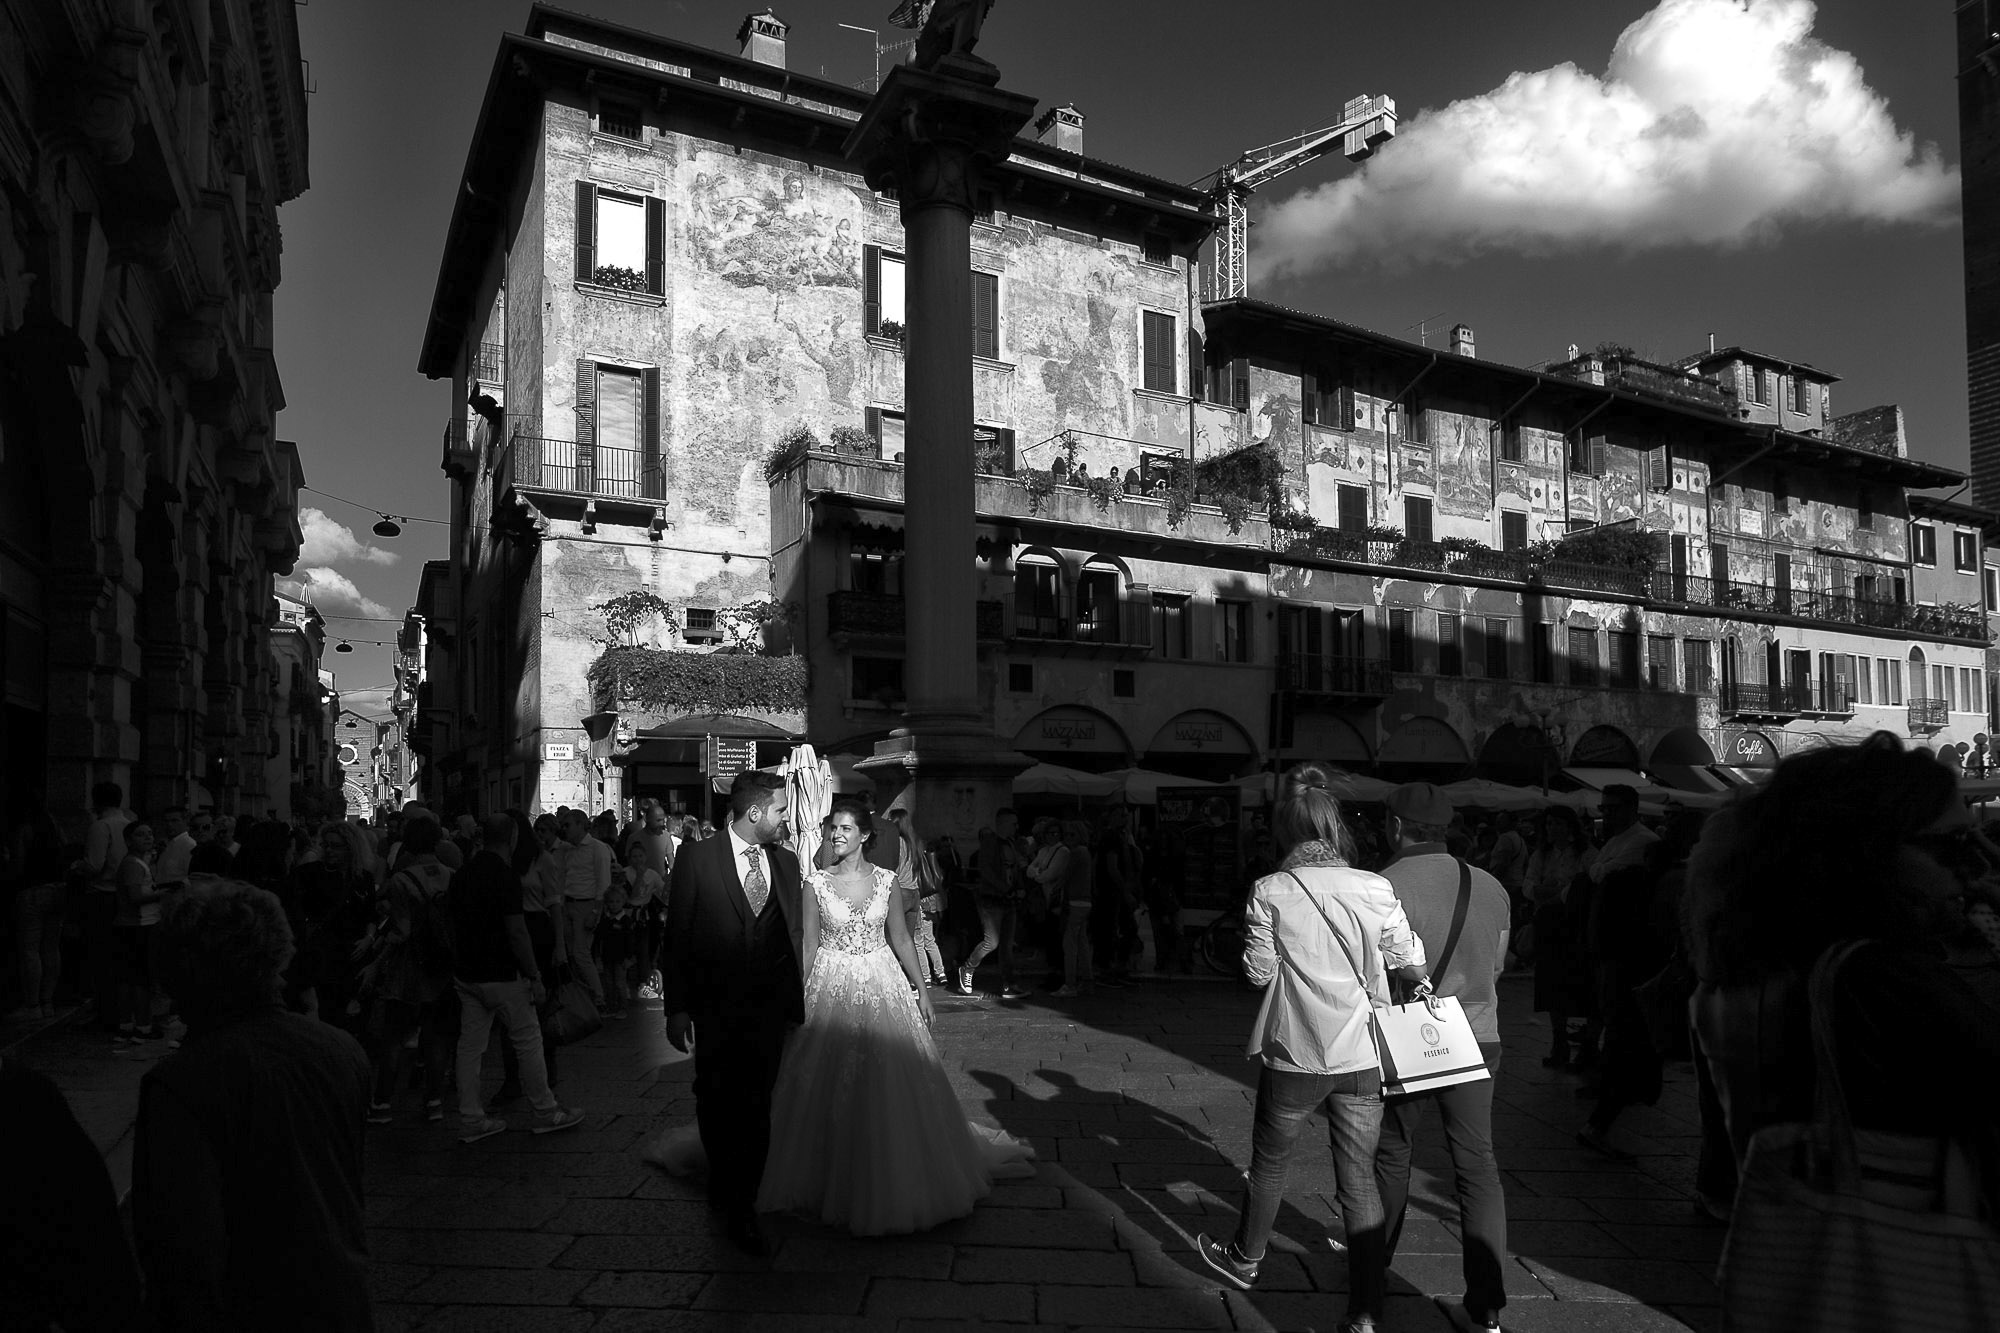 Fotografia di matrimonio a Verona. Passeggiata per la città di Verona. Street Wedding Photography fotografi professionisti di matrimonio Verona